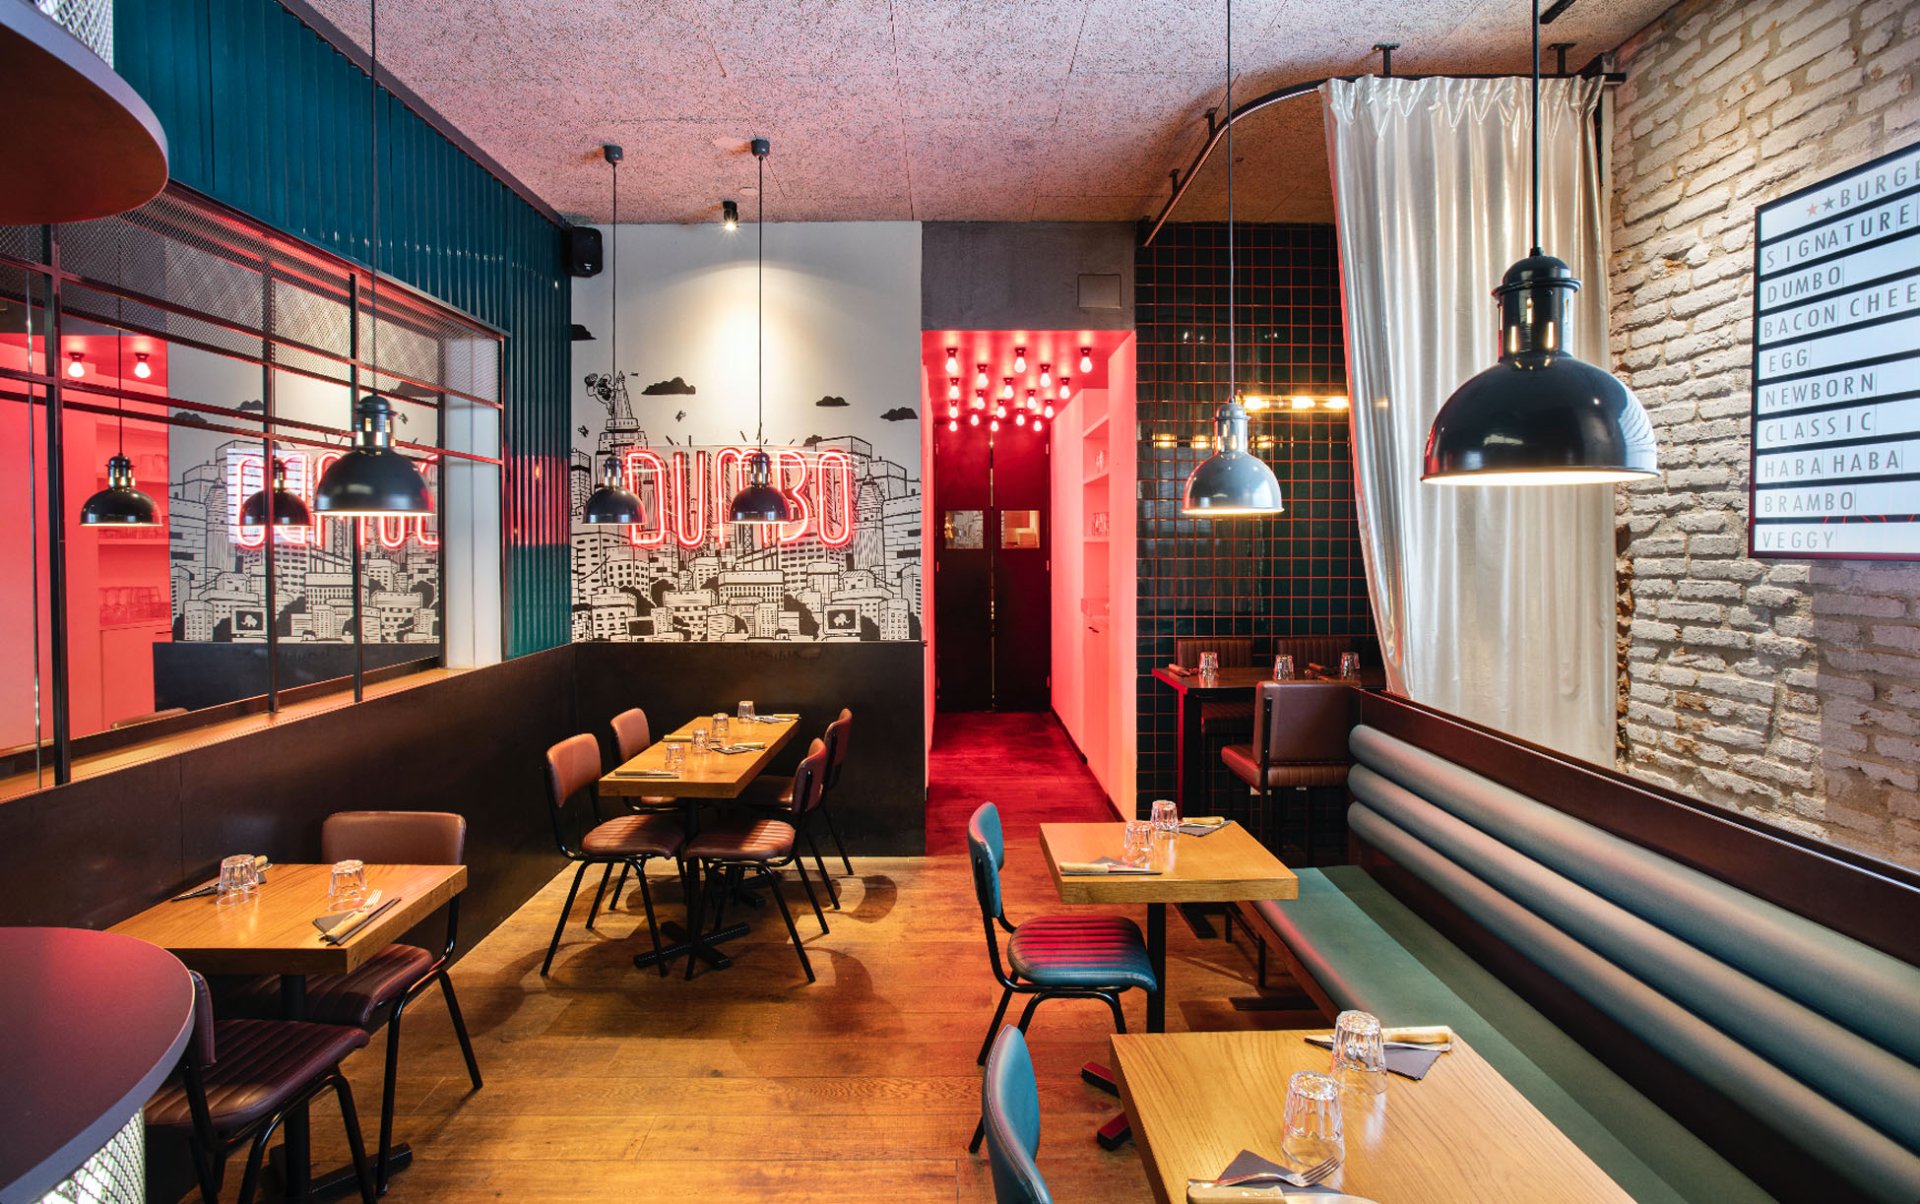 Dumbo Restaurant, Italy - Restaurant Interior Design on Love That Design